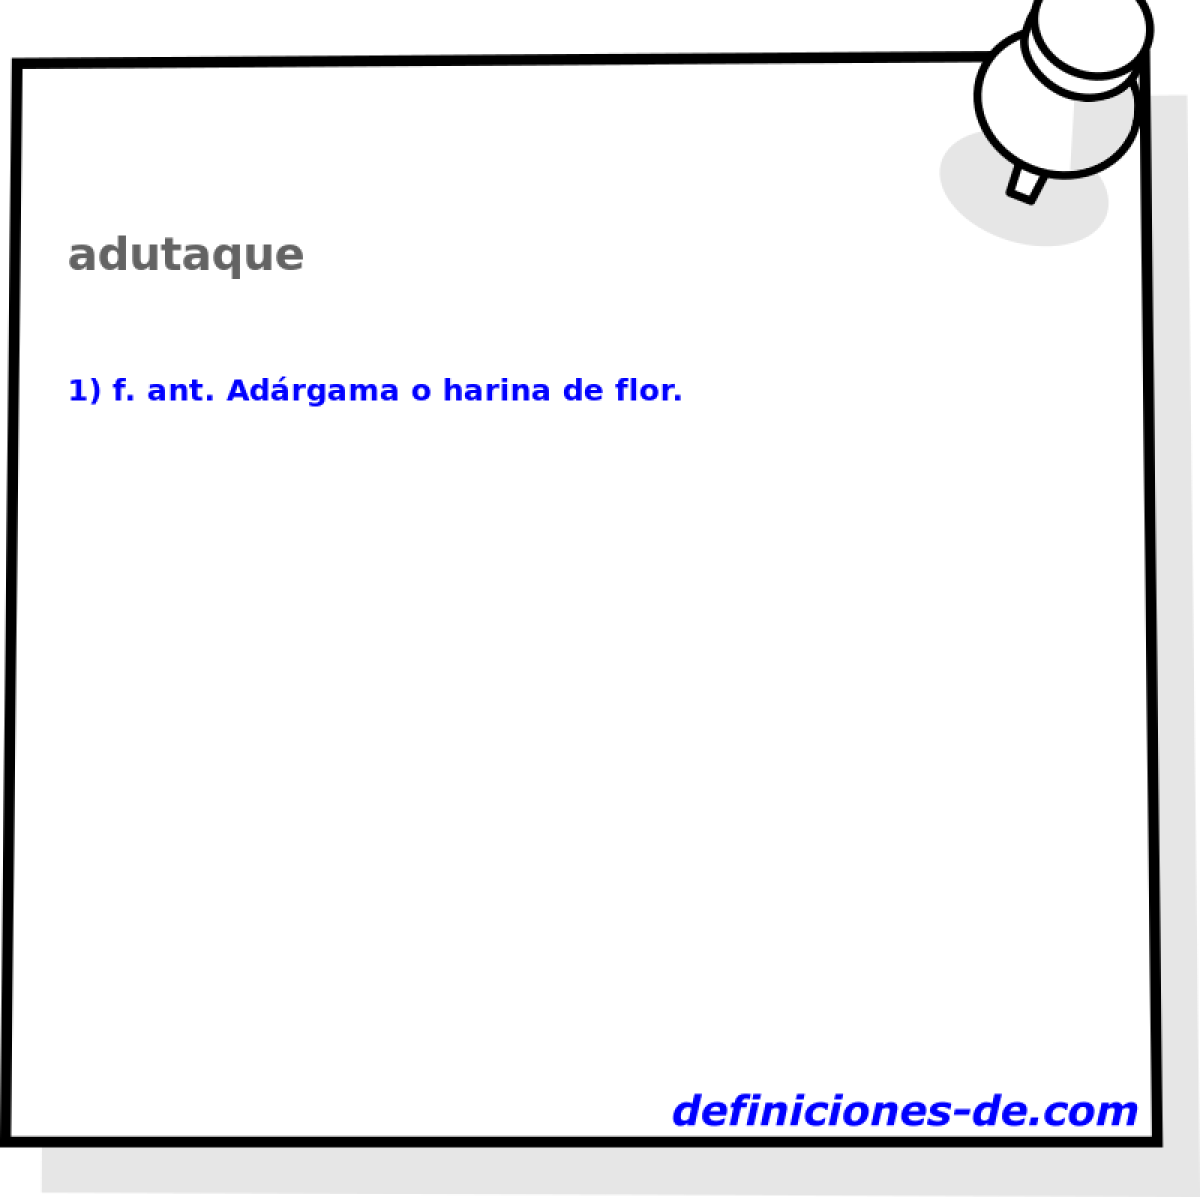 adutaque 